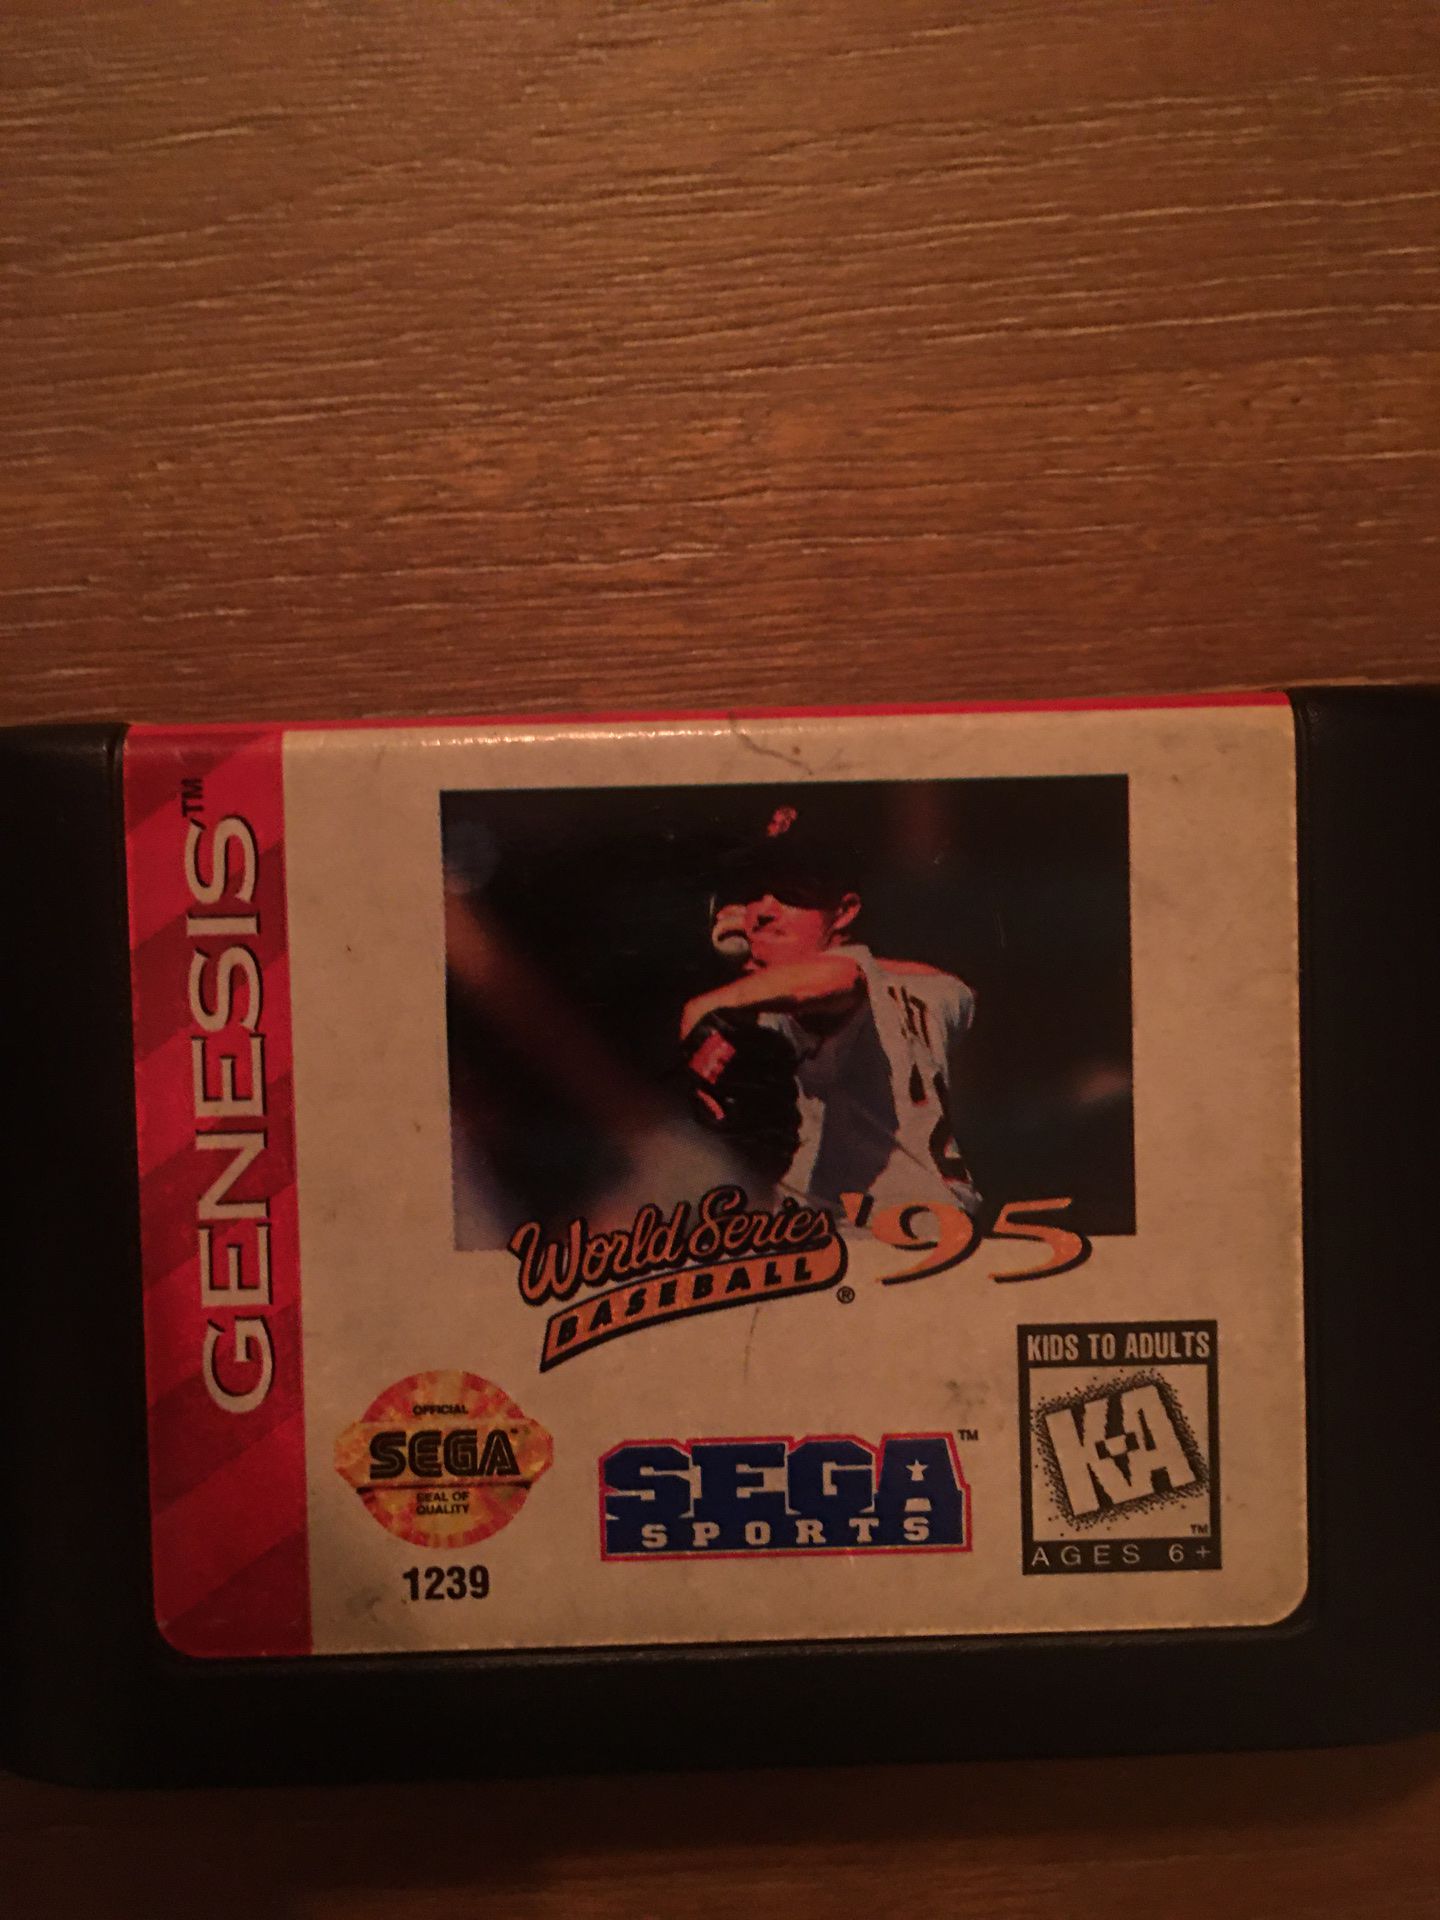 Sega genesis baseball 95